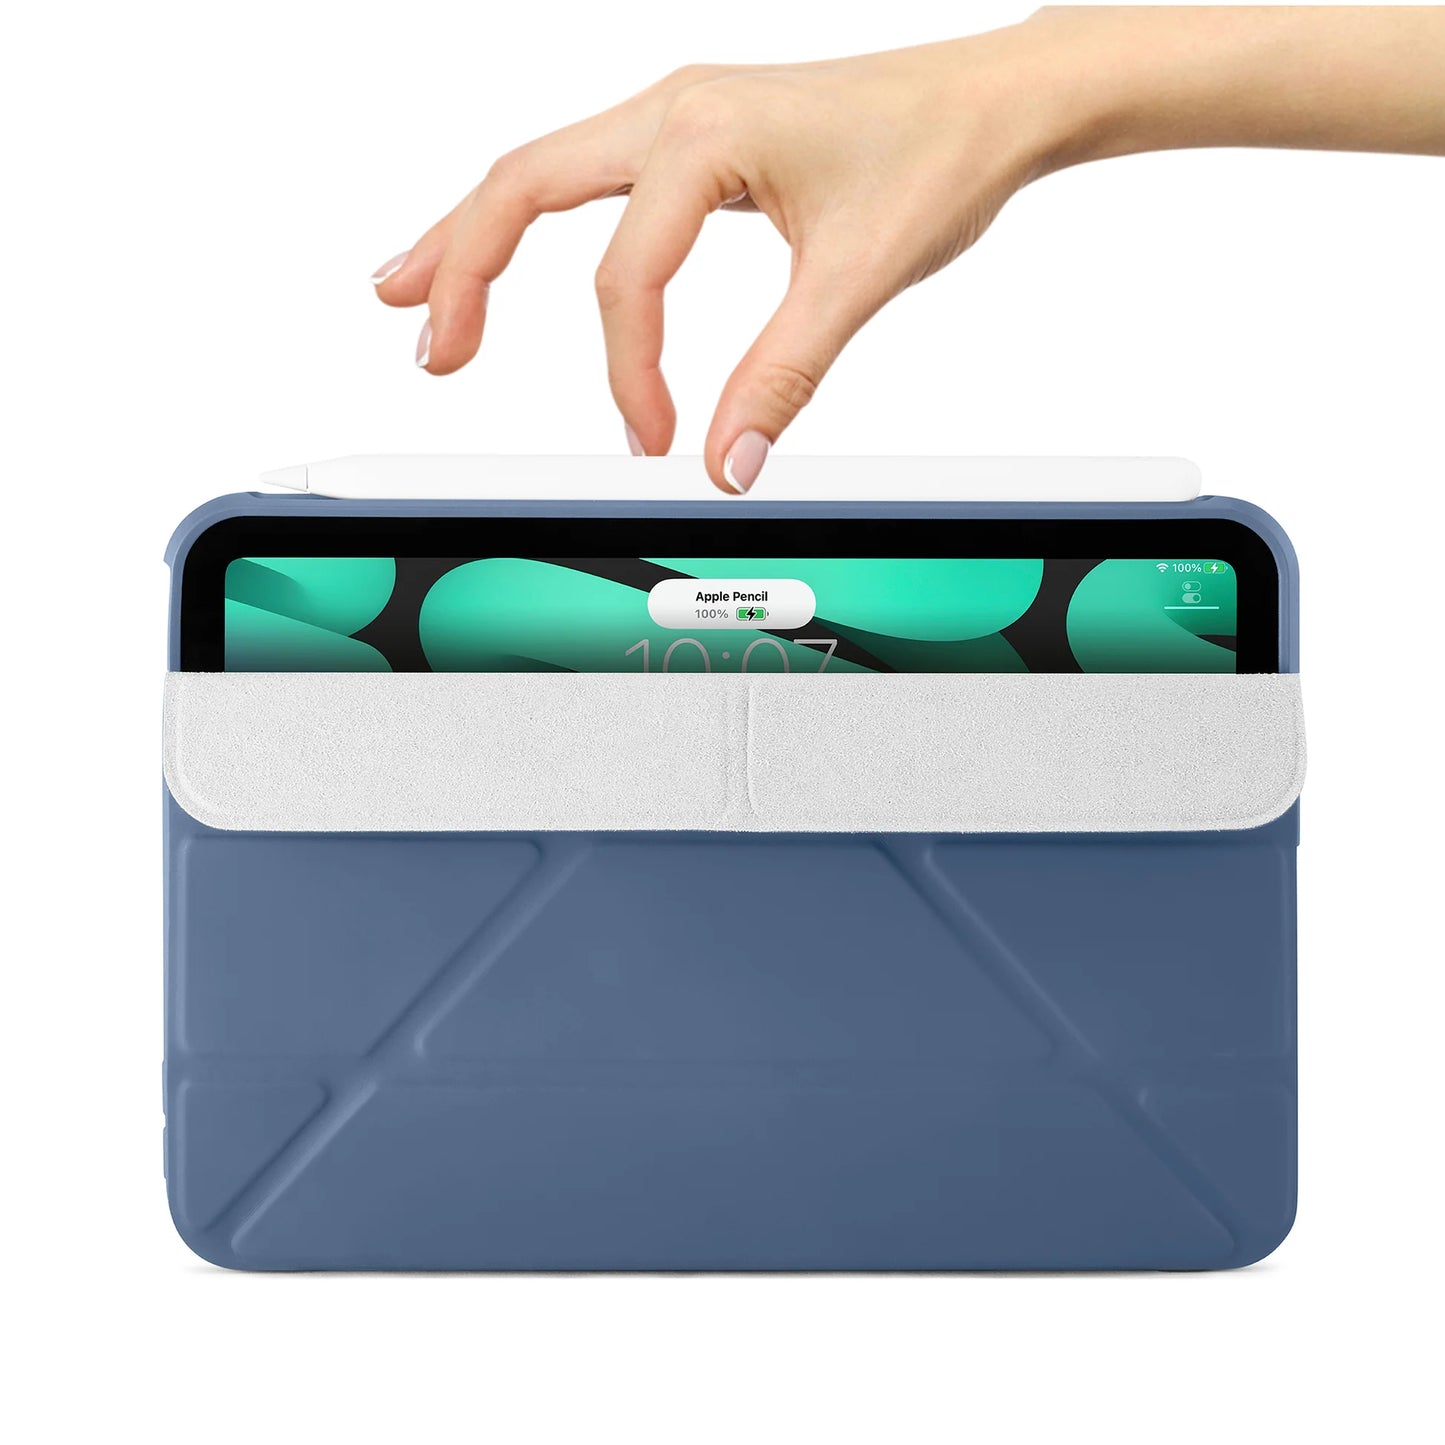 Pipetto Origami Case voor iPad mini 8,3-inch (6e gen.) - Marineblauw